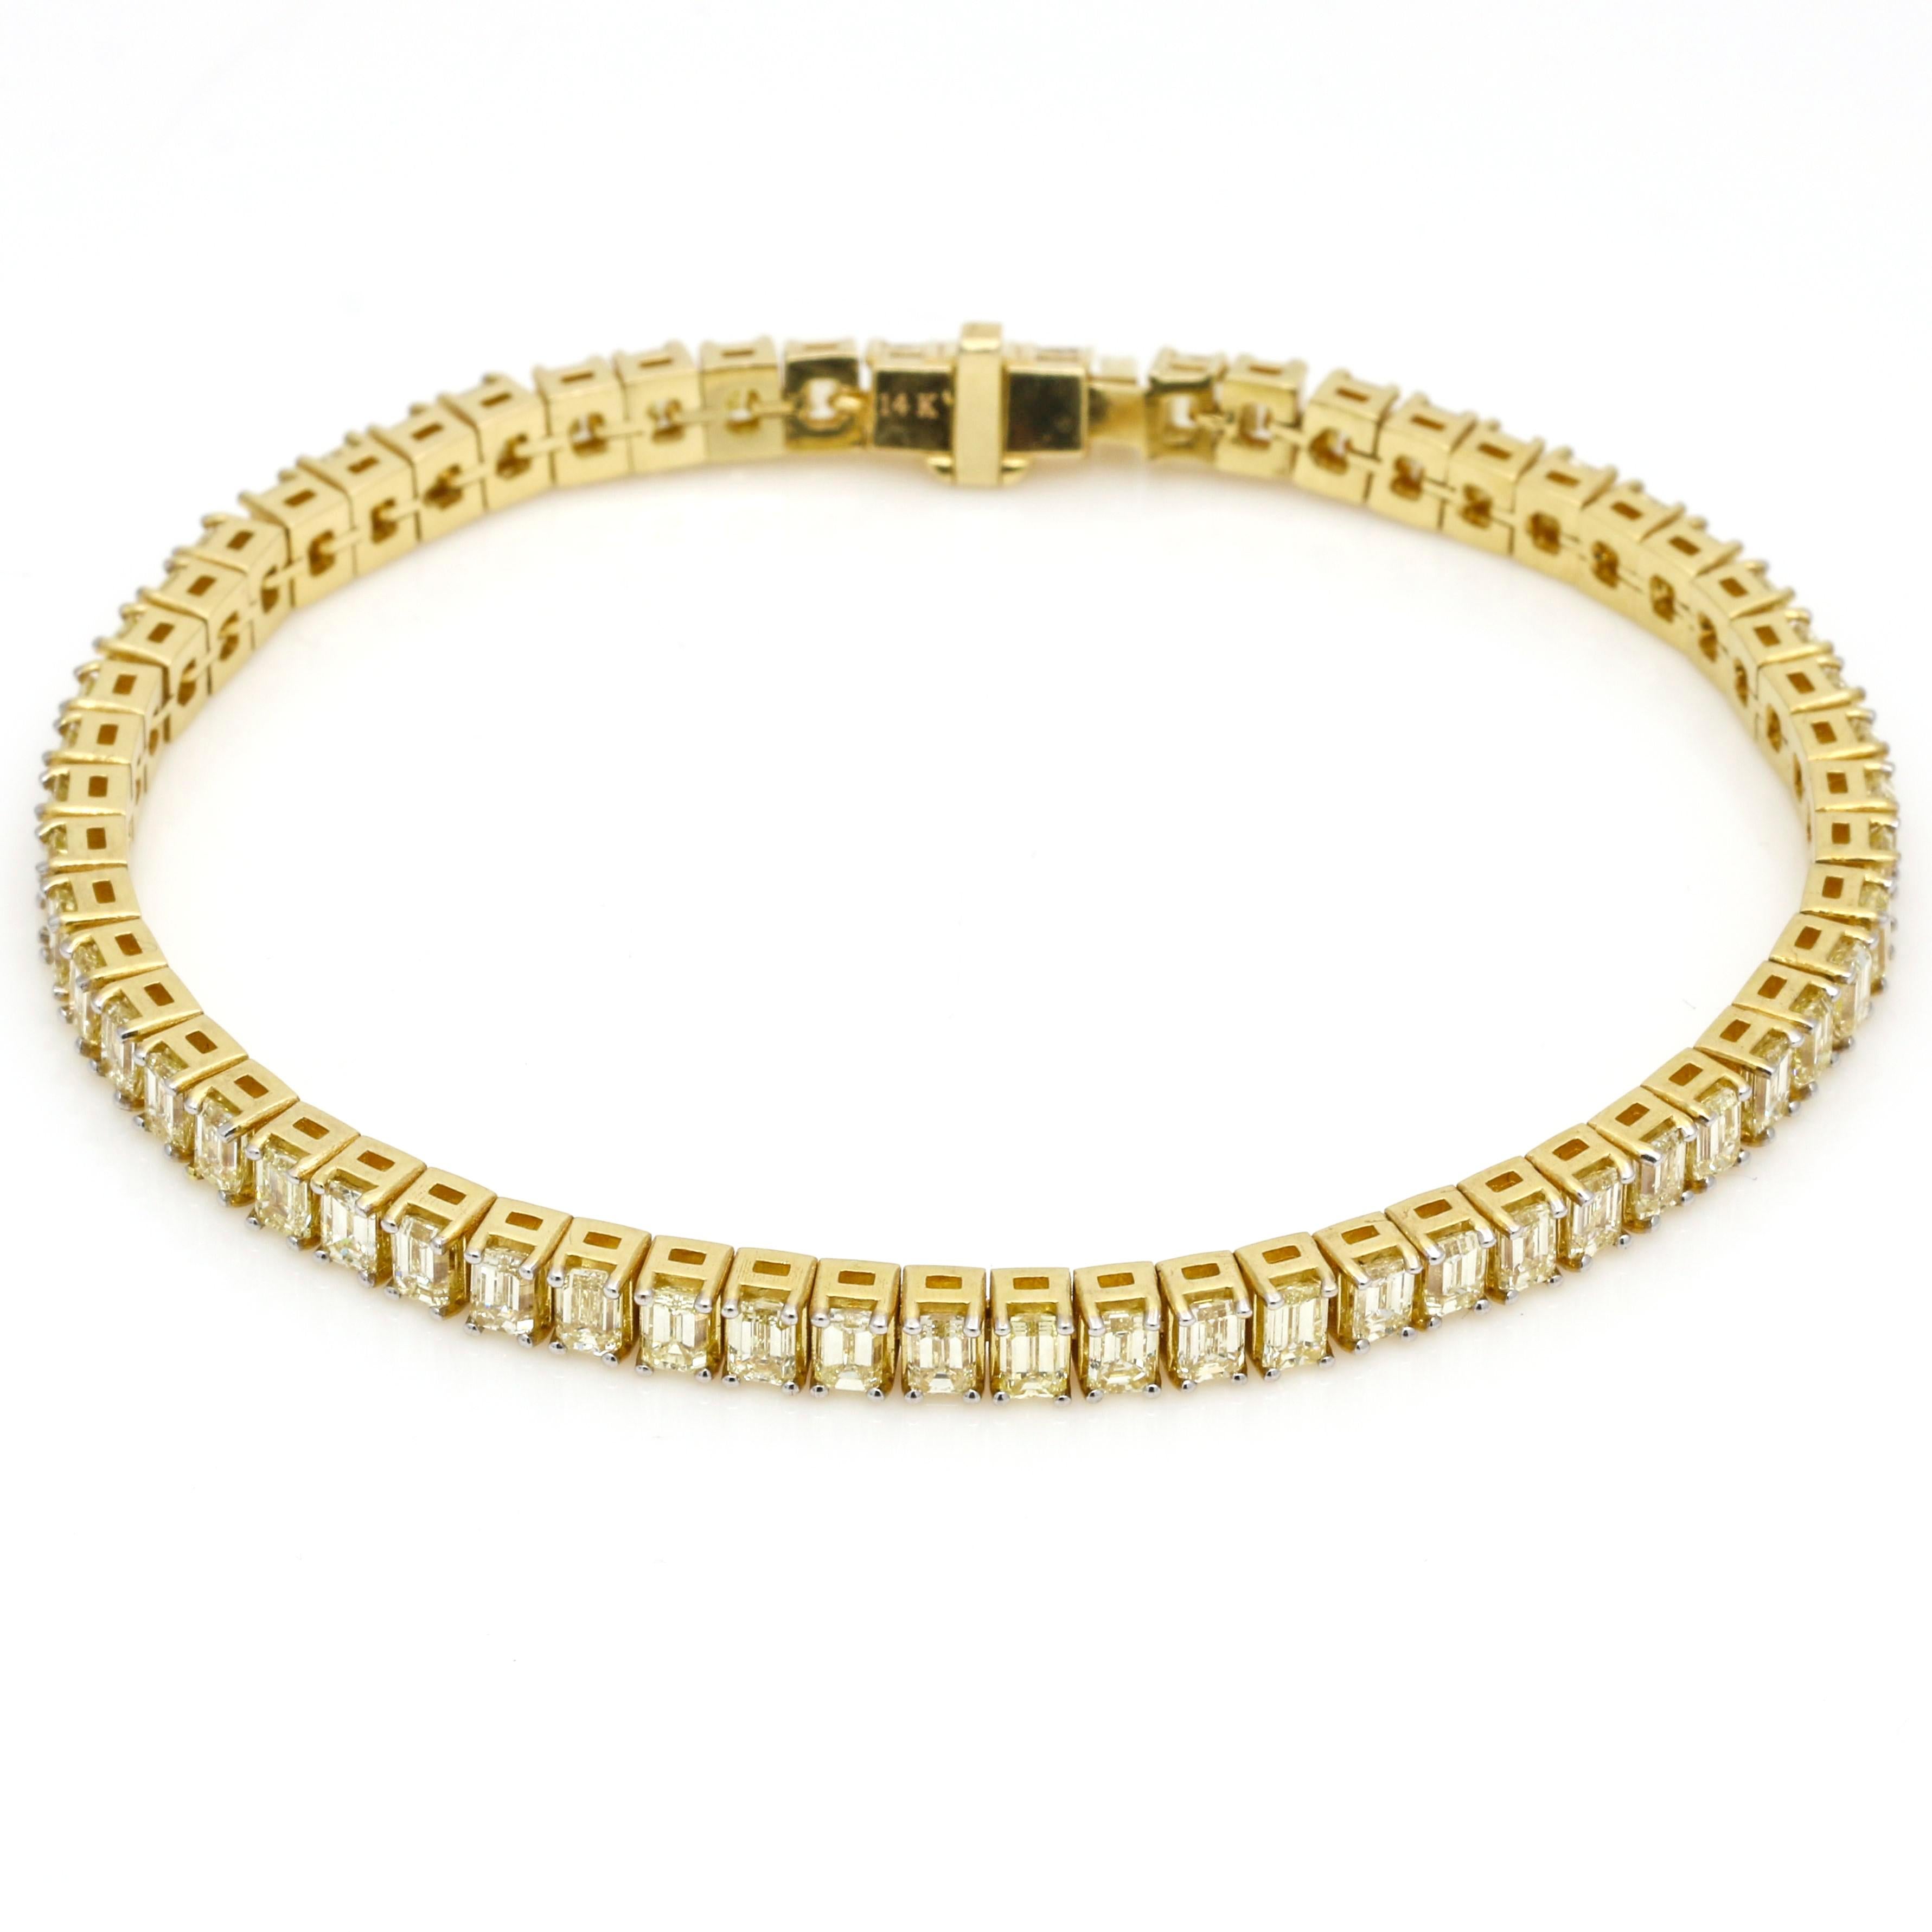 Ce magnifique bracelet de tennis en diamant est réalisé en or jaune 14k. Avec 8,97 carats de diamants naturels, vous pouvez l'ajouter à votre collection ou l'offrir à quelqu'un de spécial. L'élégant fermoir à languette coulissante rend cette pièce